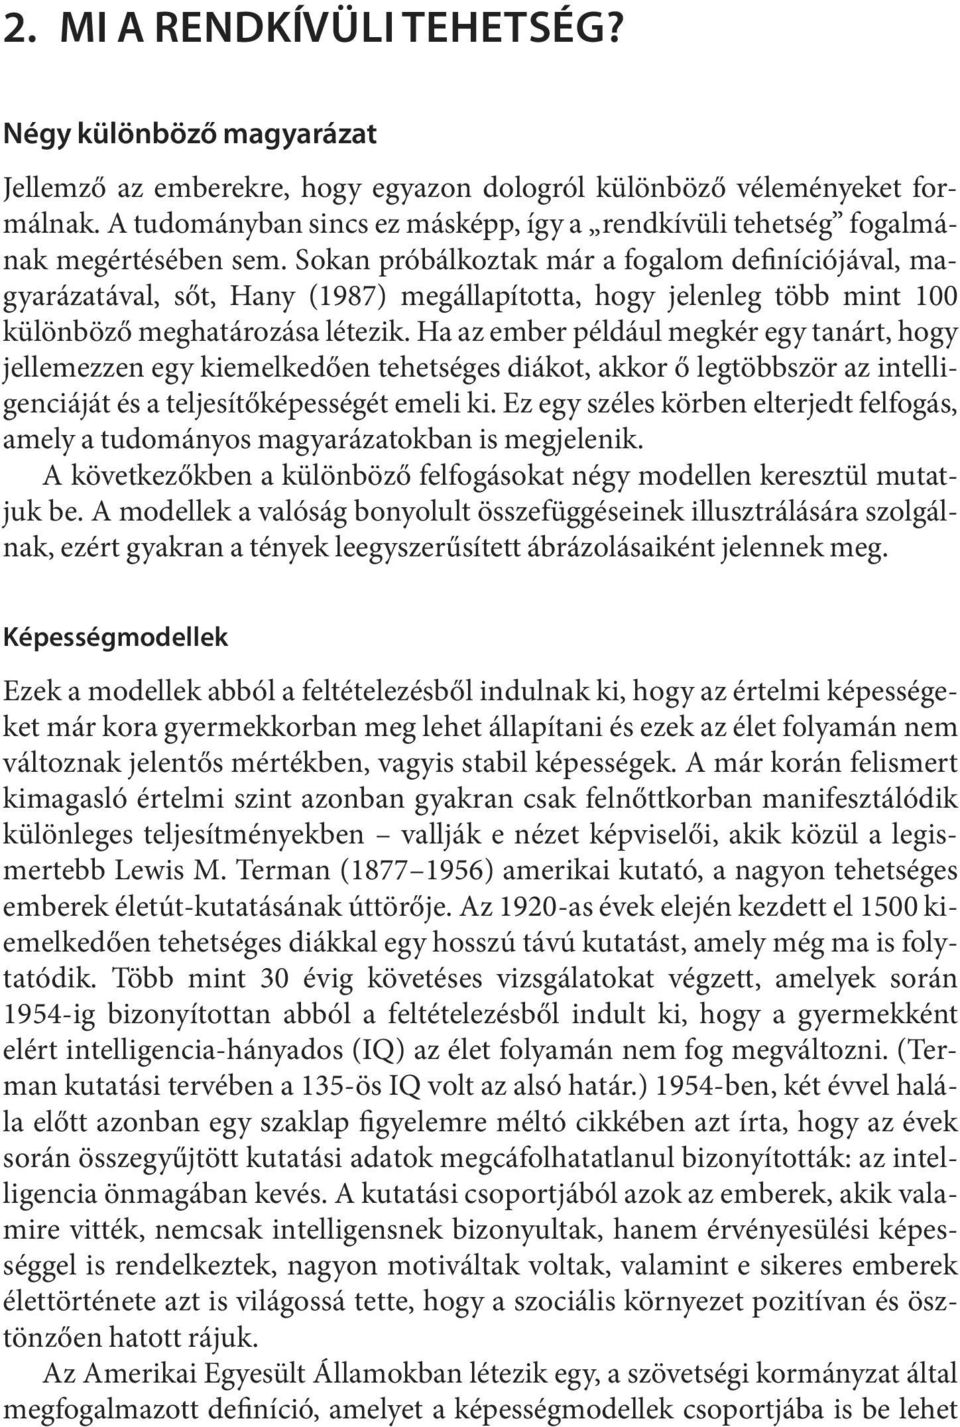 So kan pró bál koz tak már a fo ga lom de fi ní ció já val, magyarázatával, sőt, Hany (1987) megállapította, hogy jelenleg több mint 100 különböző meghatározása létezik.